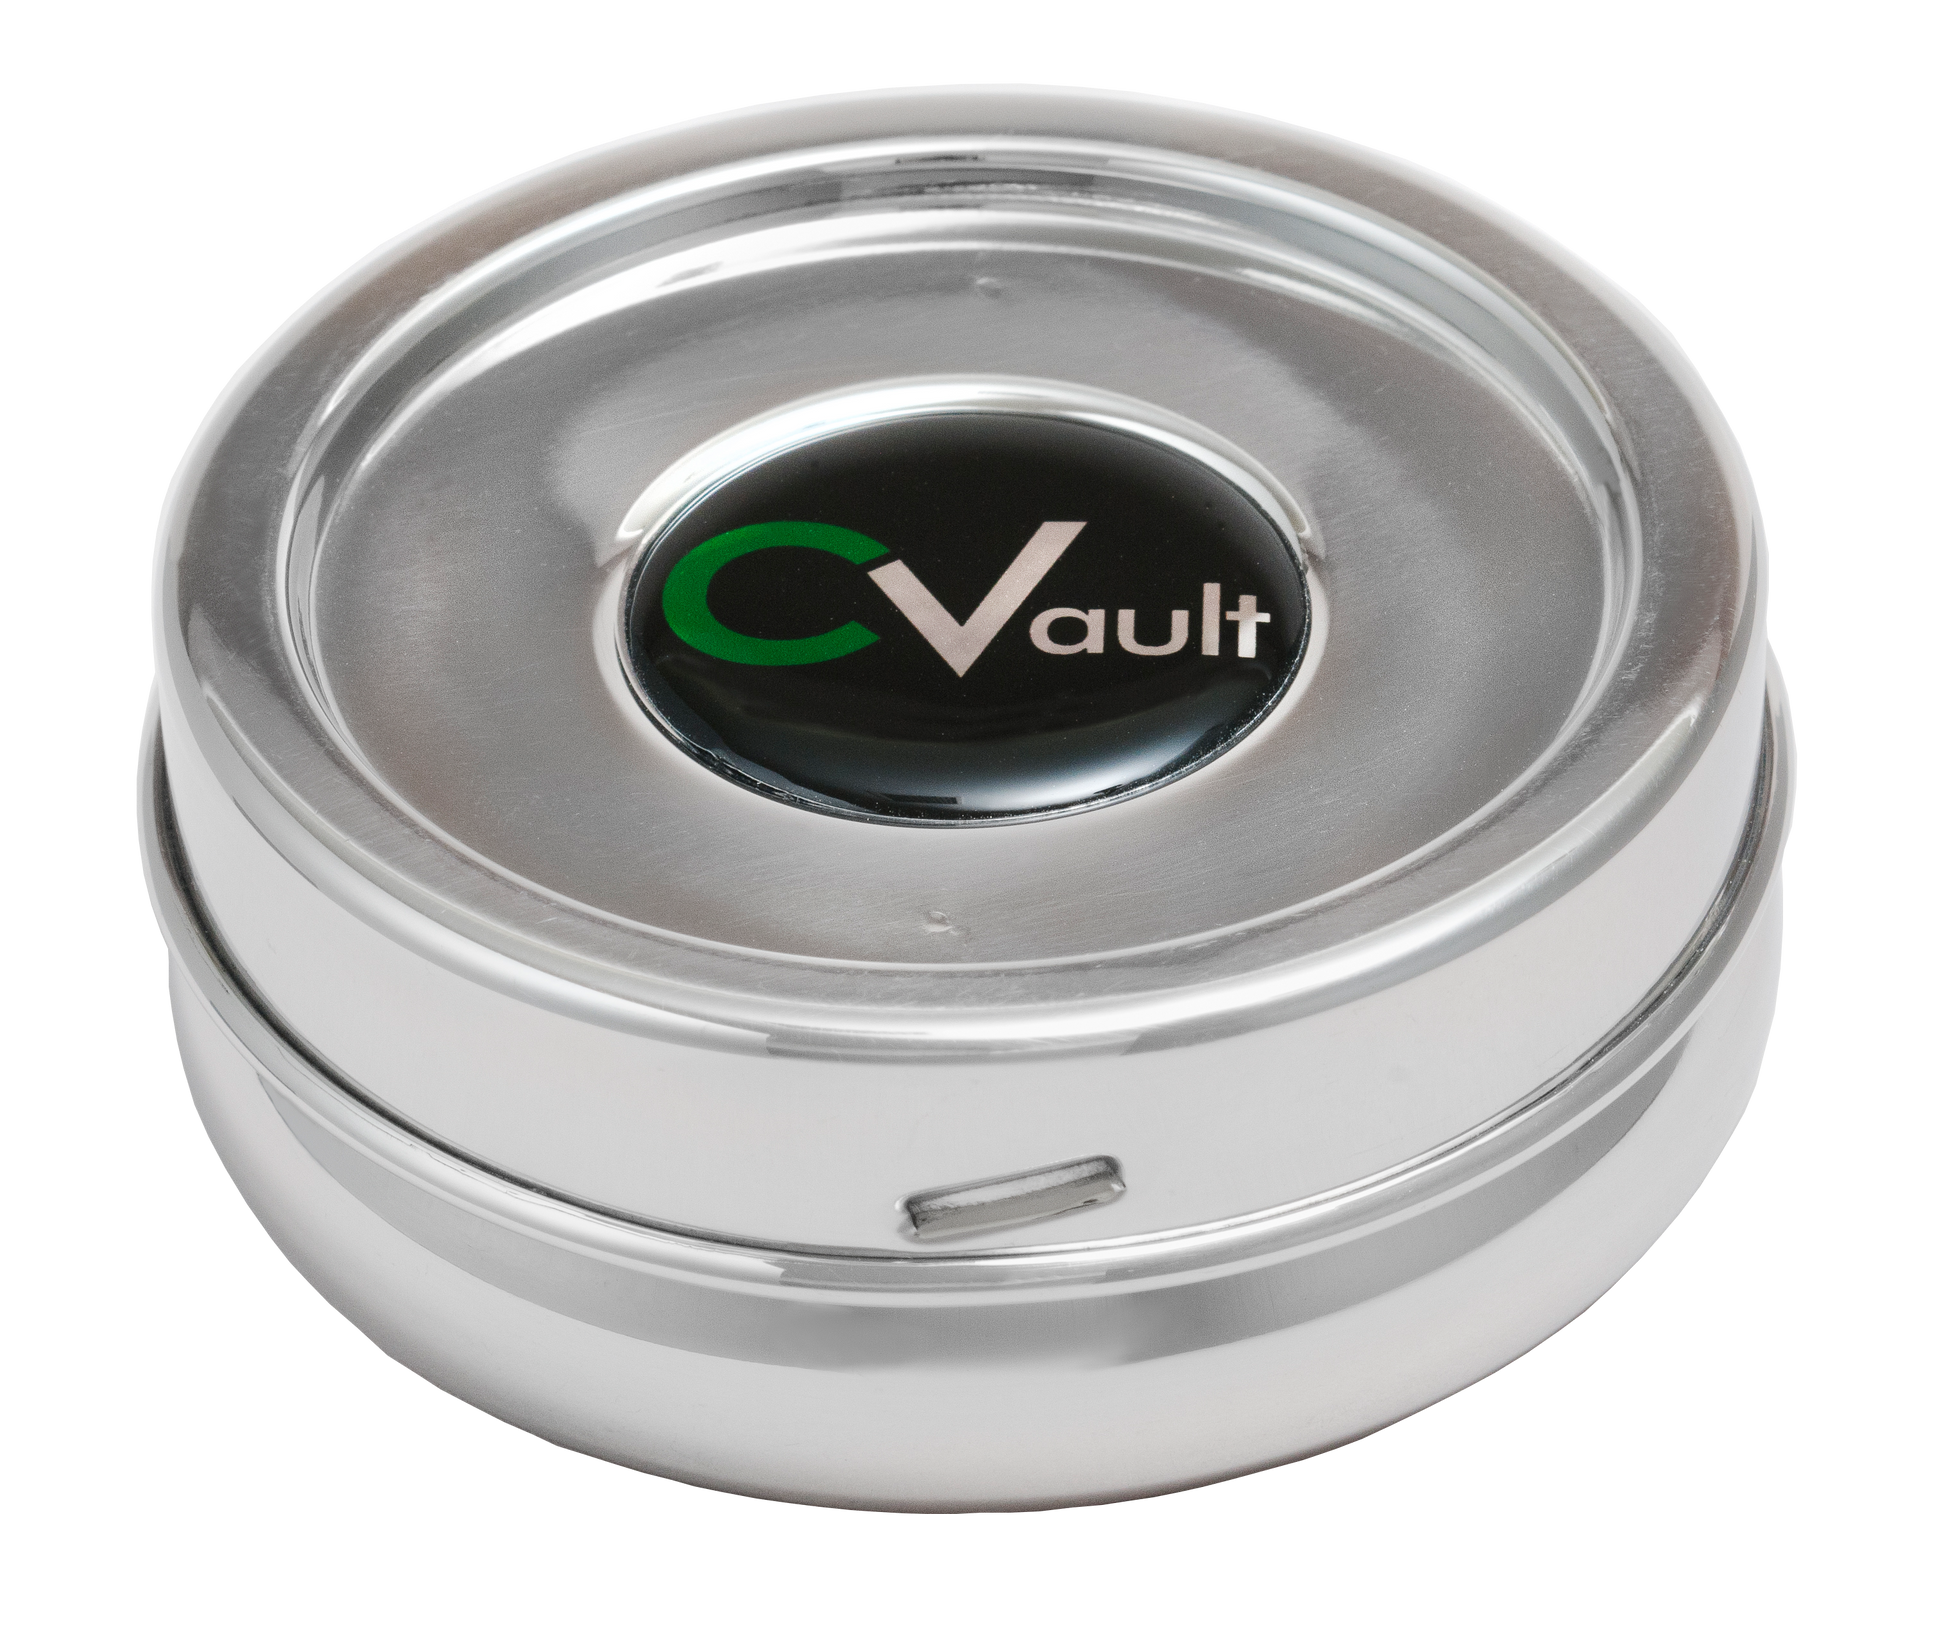 CVault存储容器配件:存储容器FreshStor extrasmall